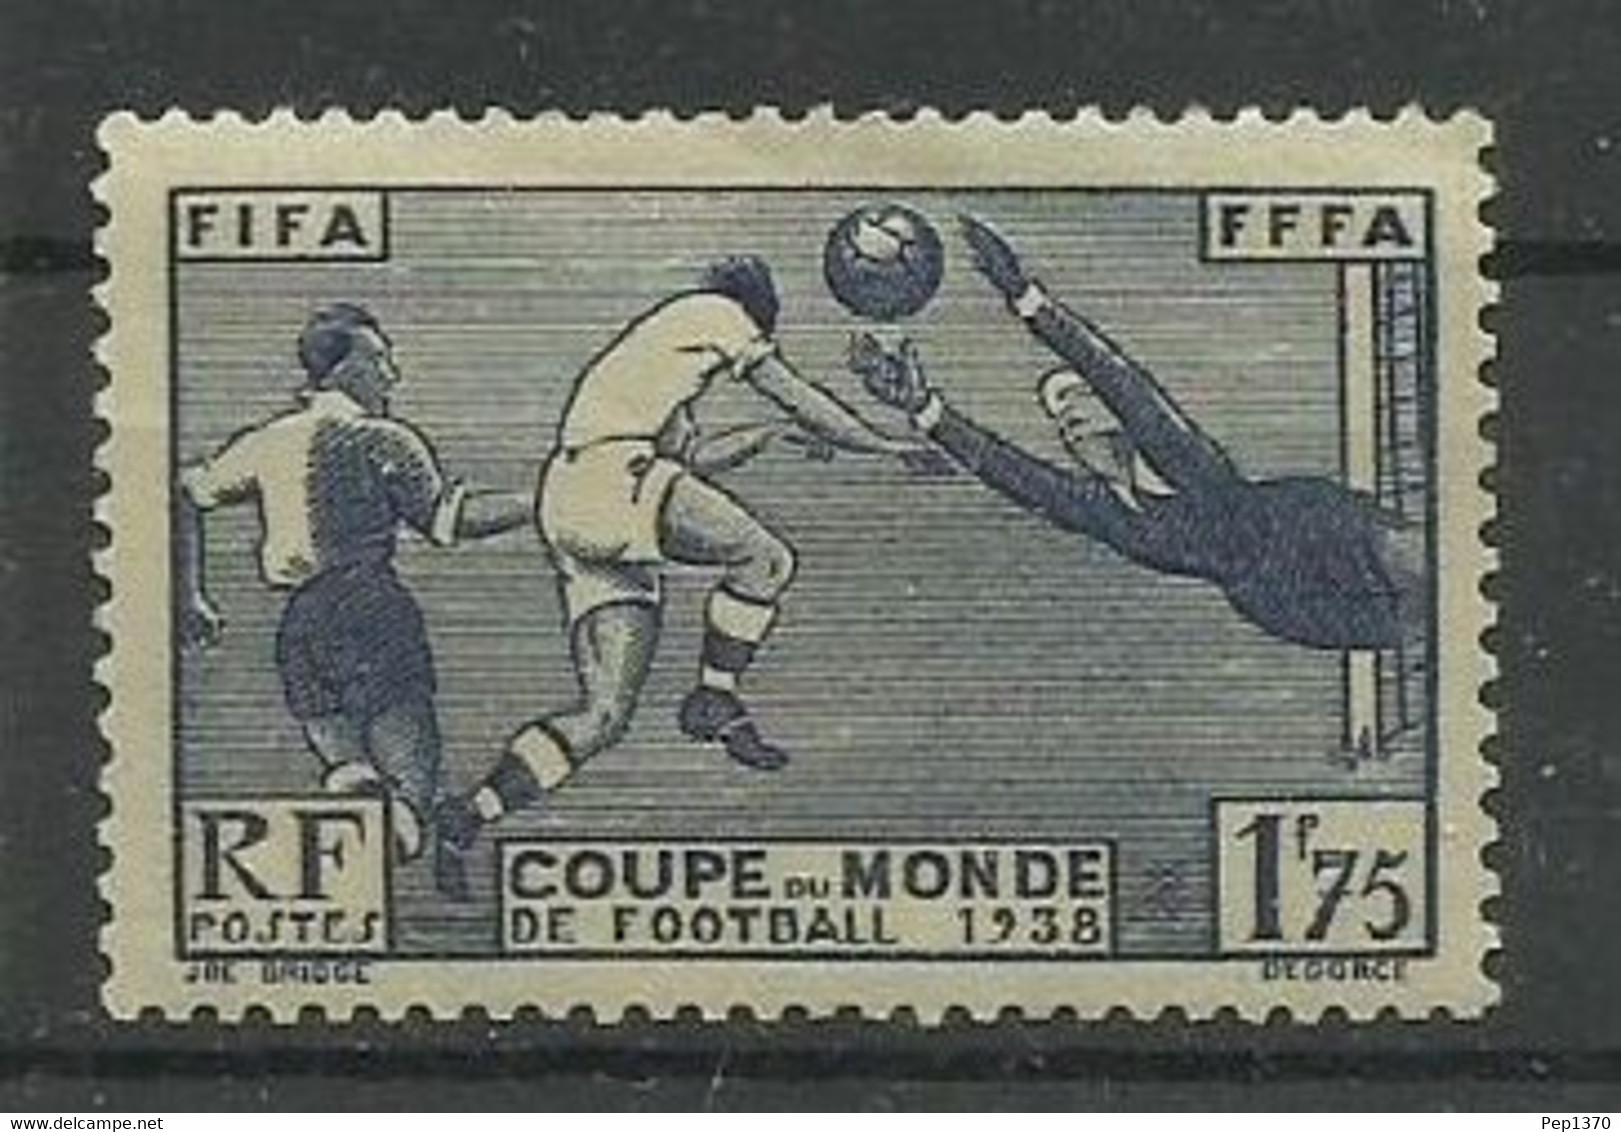 FRANCIA 1938 - CAMPEONATO DEL MUNDO DE FUTBOL FRANCIA 1938 - YVERT 396* - 1938 – France